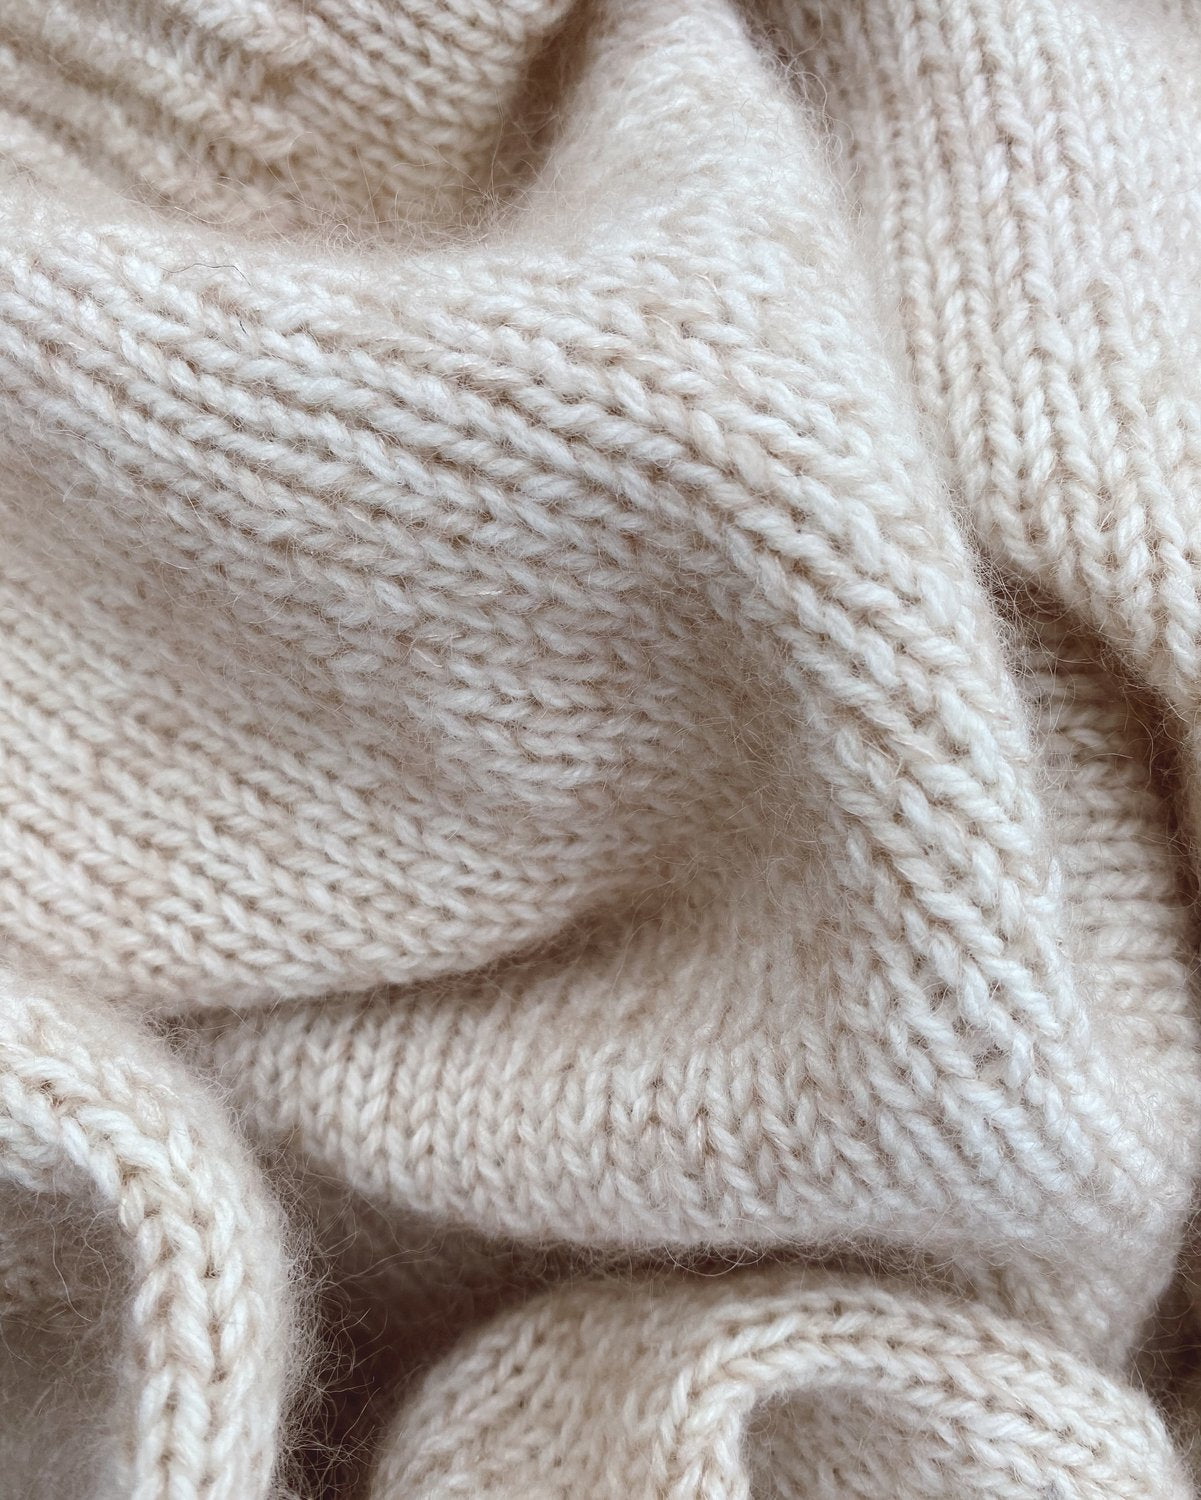 Novise Sweater - begynder strikkeopskrift fra PetiteKnit